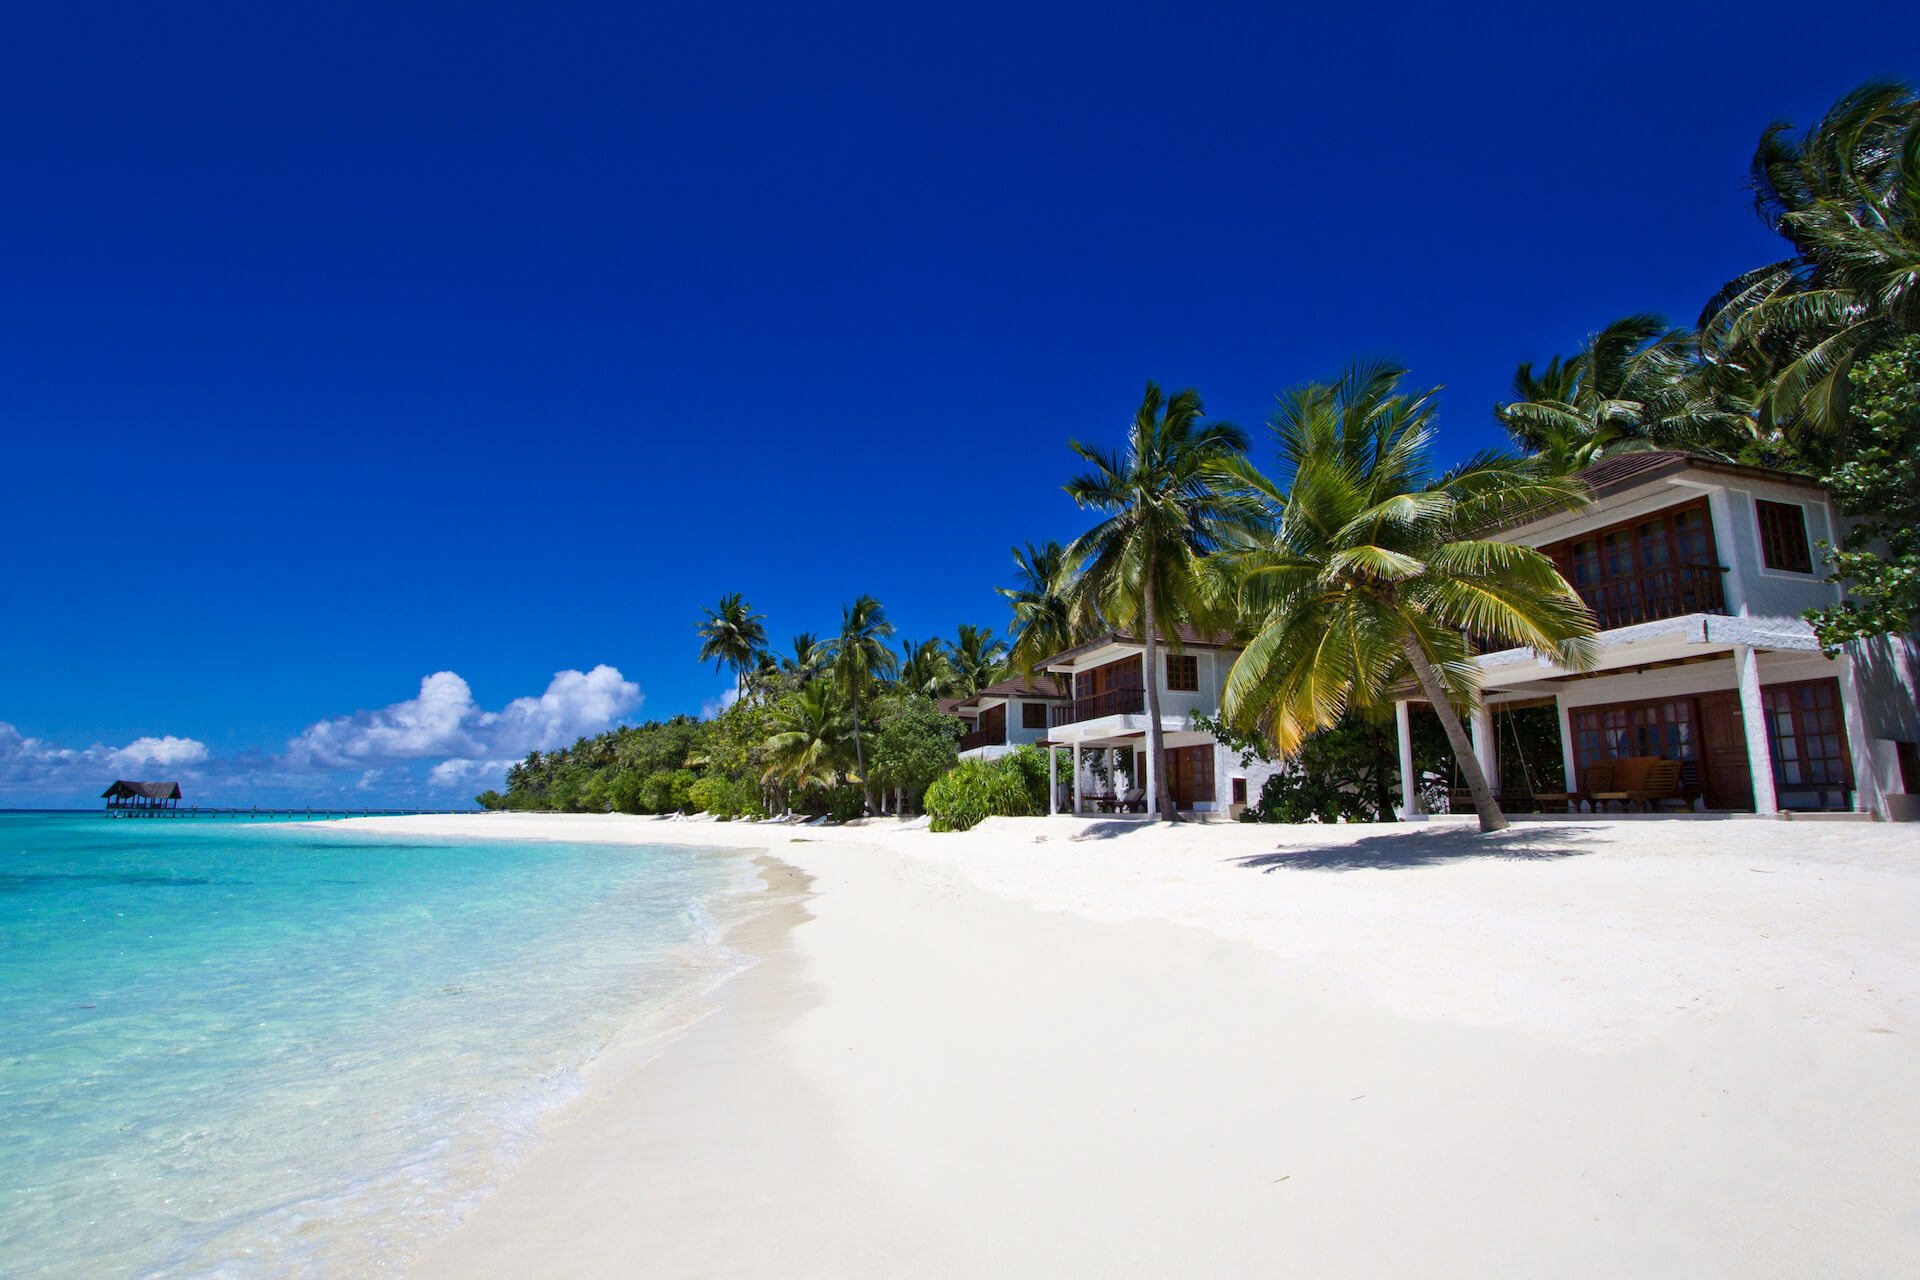 Island beach 2. Палм Бич Мальдивы. Palm Beach Resort & Spa. Palm Beach Resort & Spa Maldives 4*. The Palms Мальдивы.